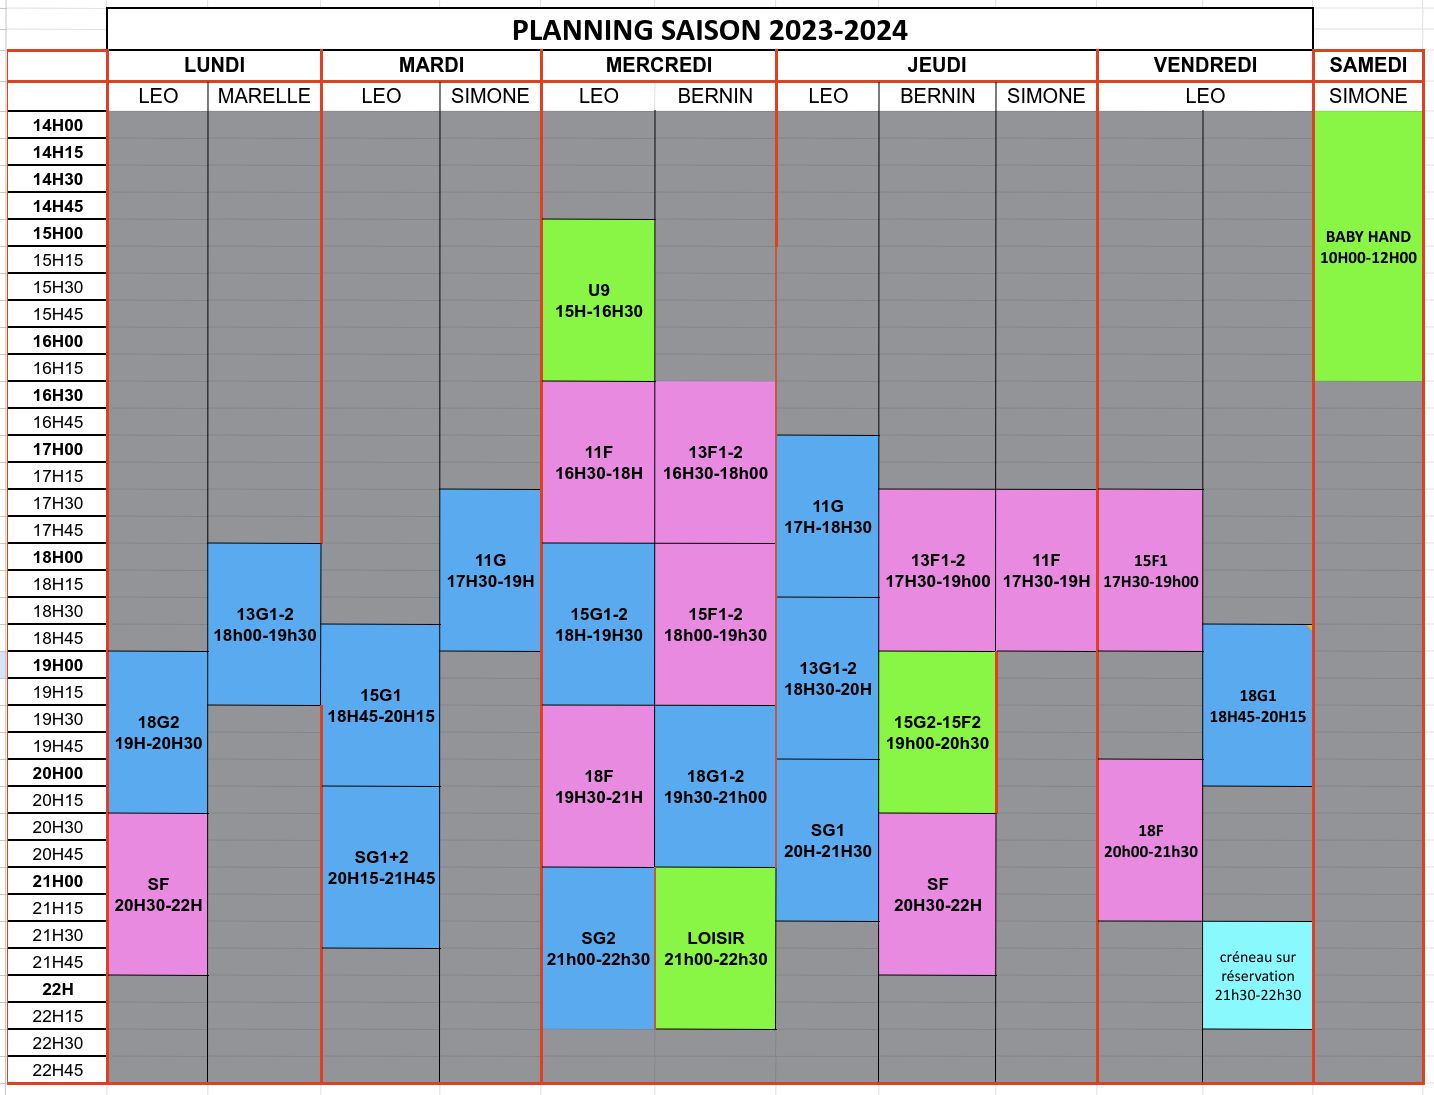 Planning entrainements saison 2023-2024